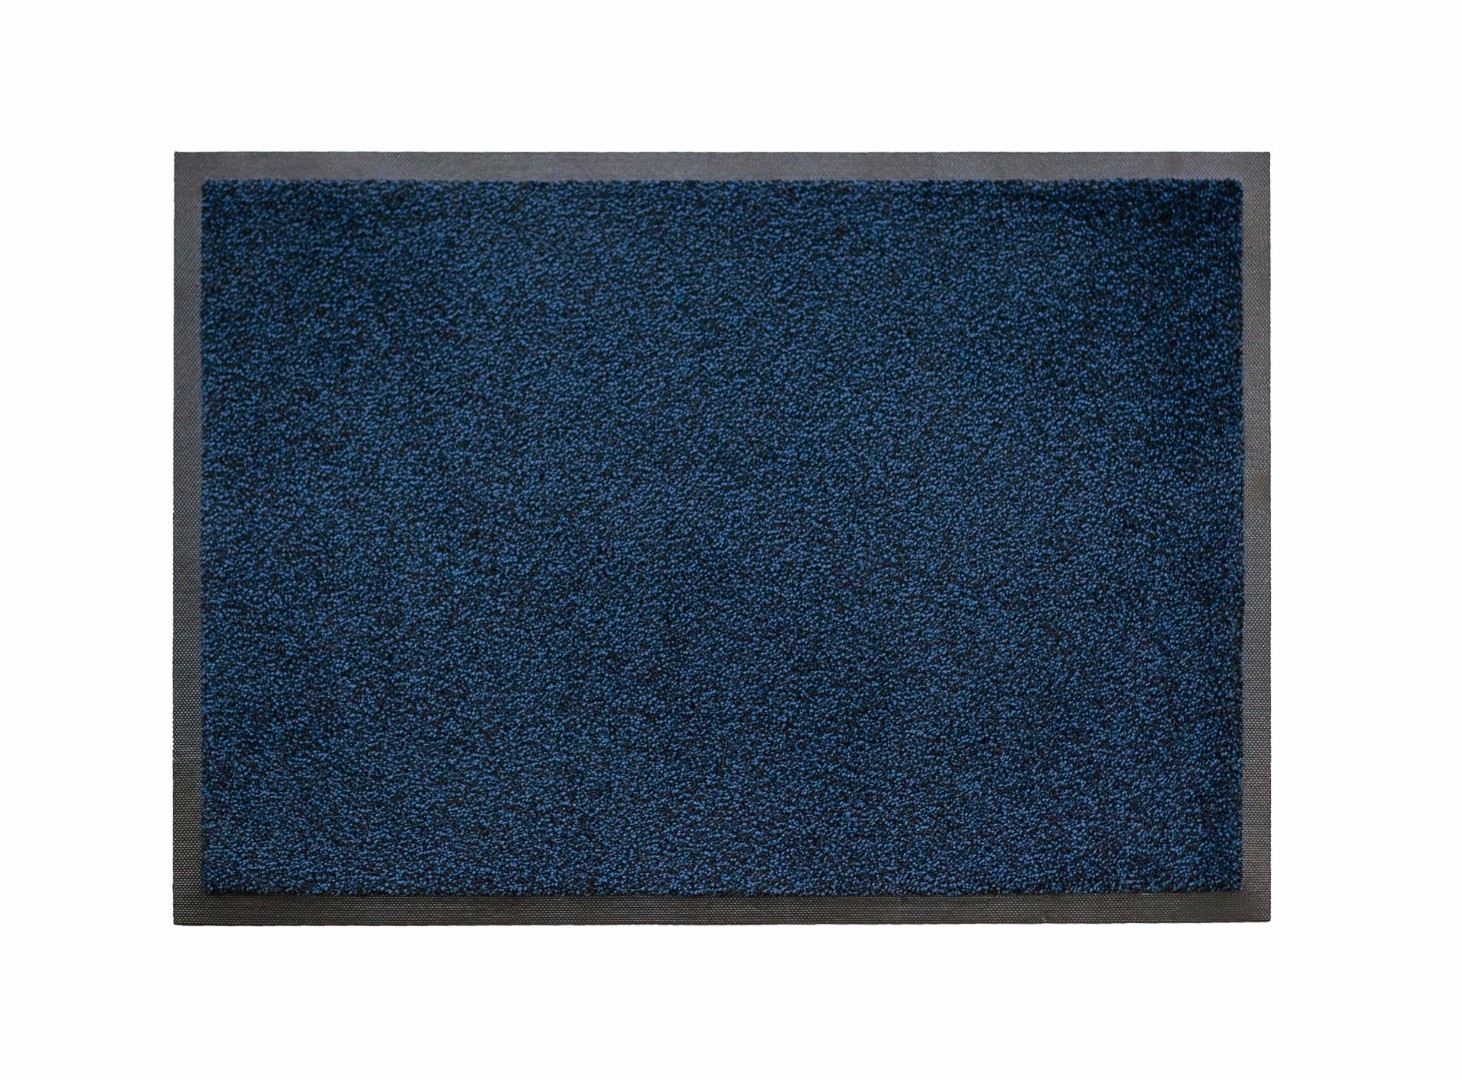 Ворсовый ковер на резиновой основе Iron-Horse black blue 85x150